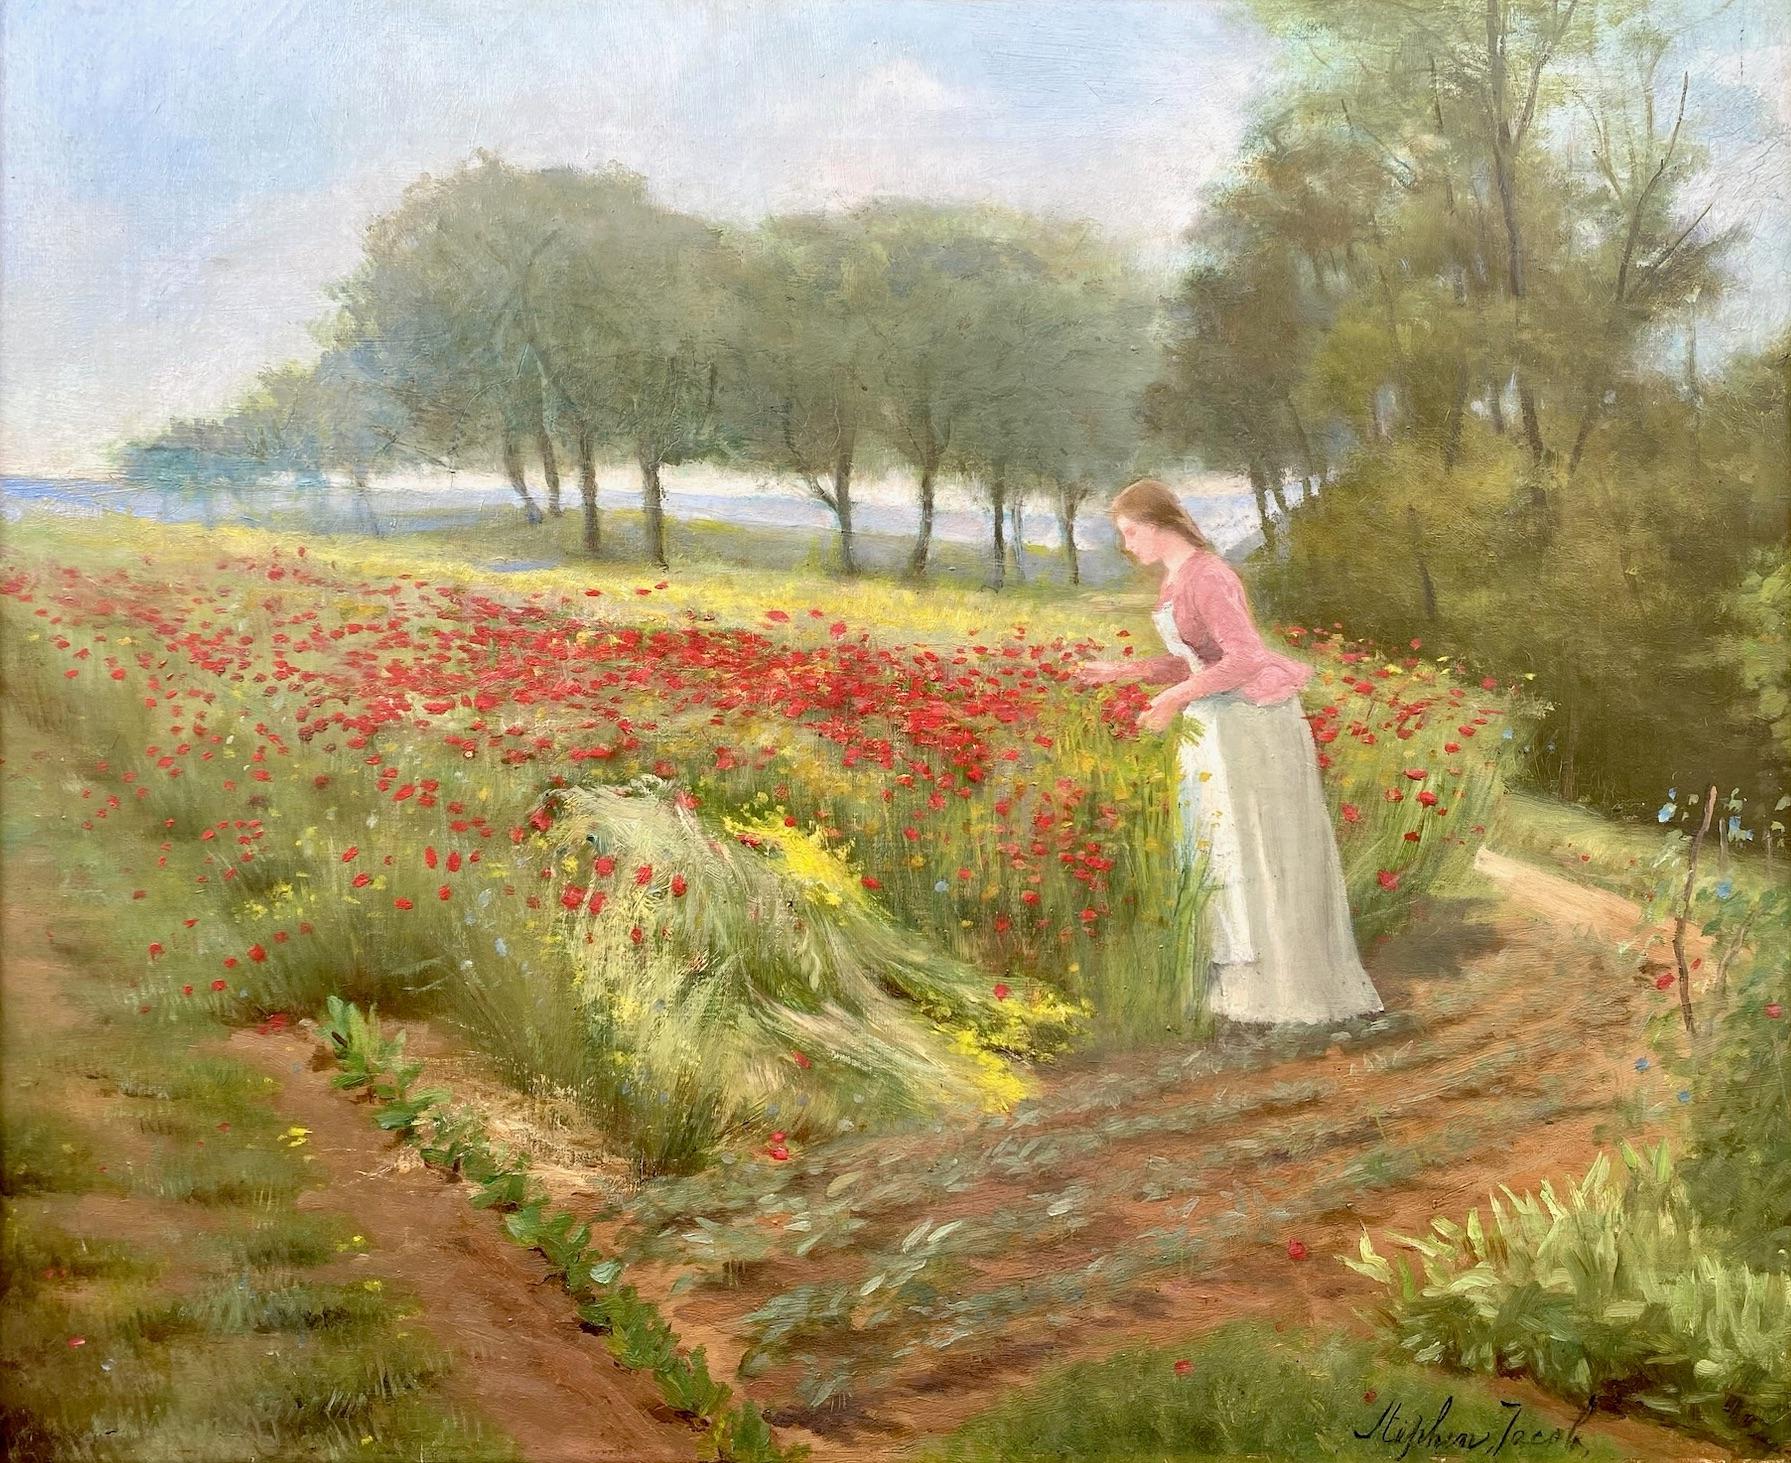 Gathering Wildrote Mohnblumen: Frau auf einem Mohnblumenfeld  – Painting von Stephen Jacob